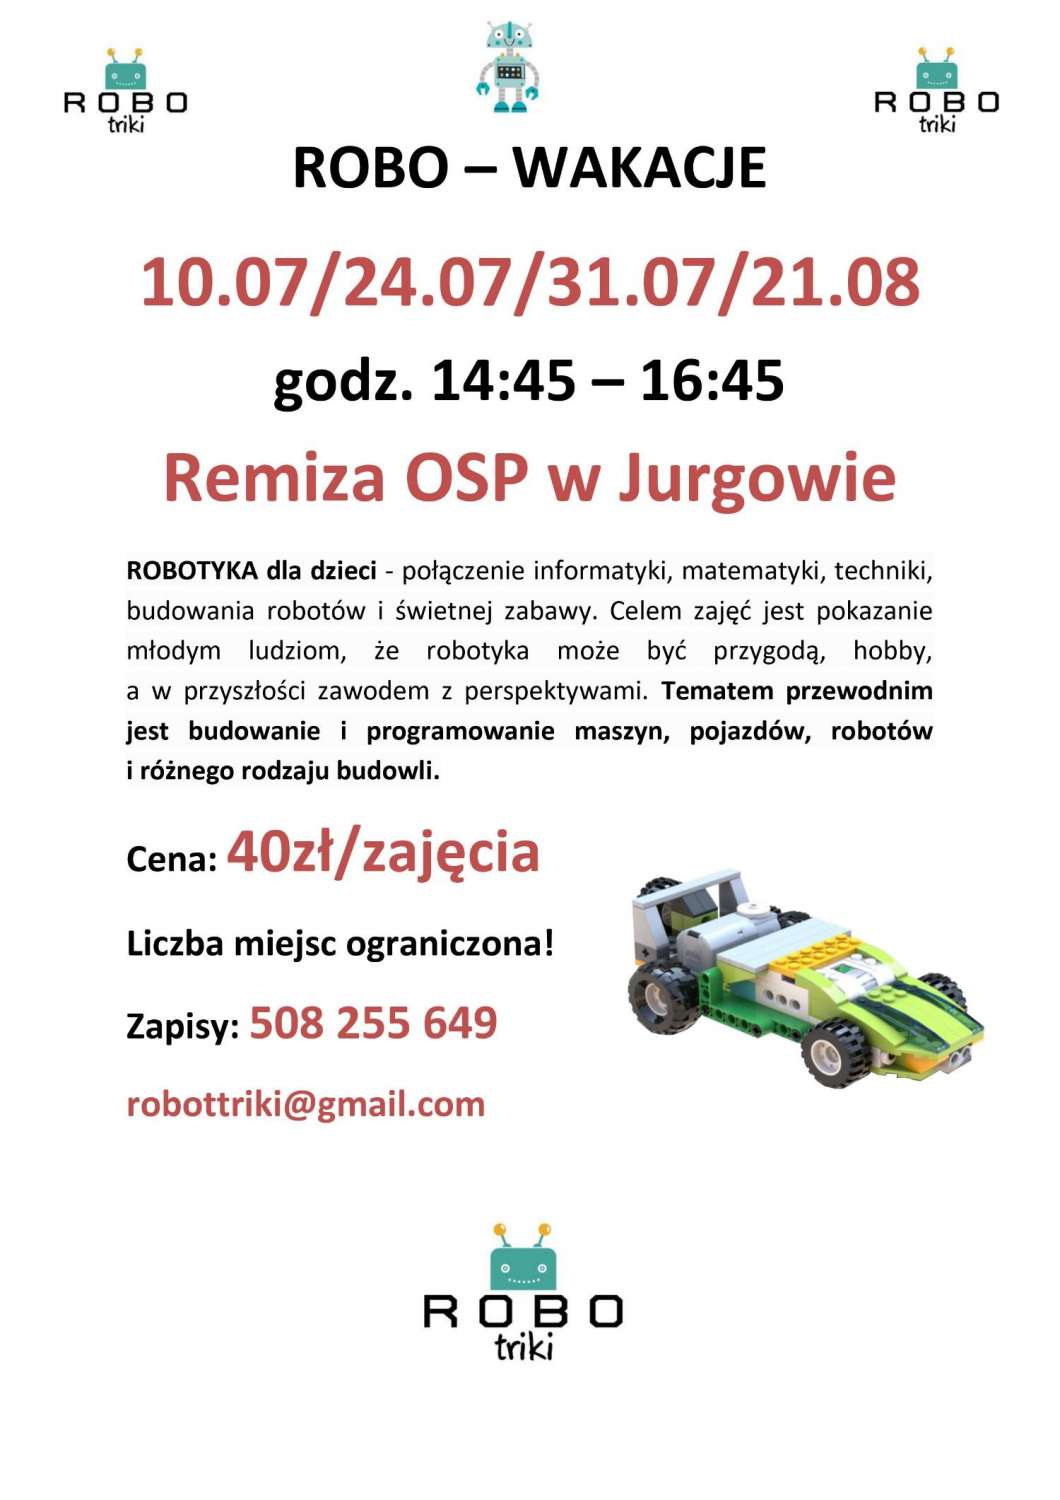 ROBO – WAKACJE w OSP w Jurgowie